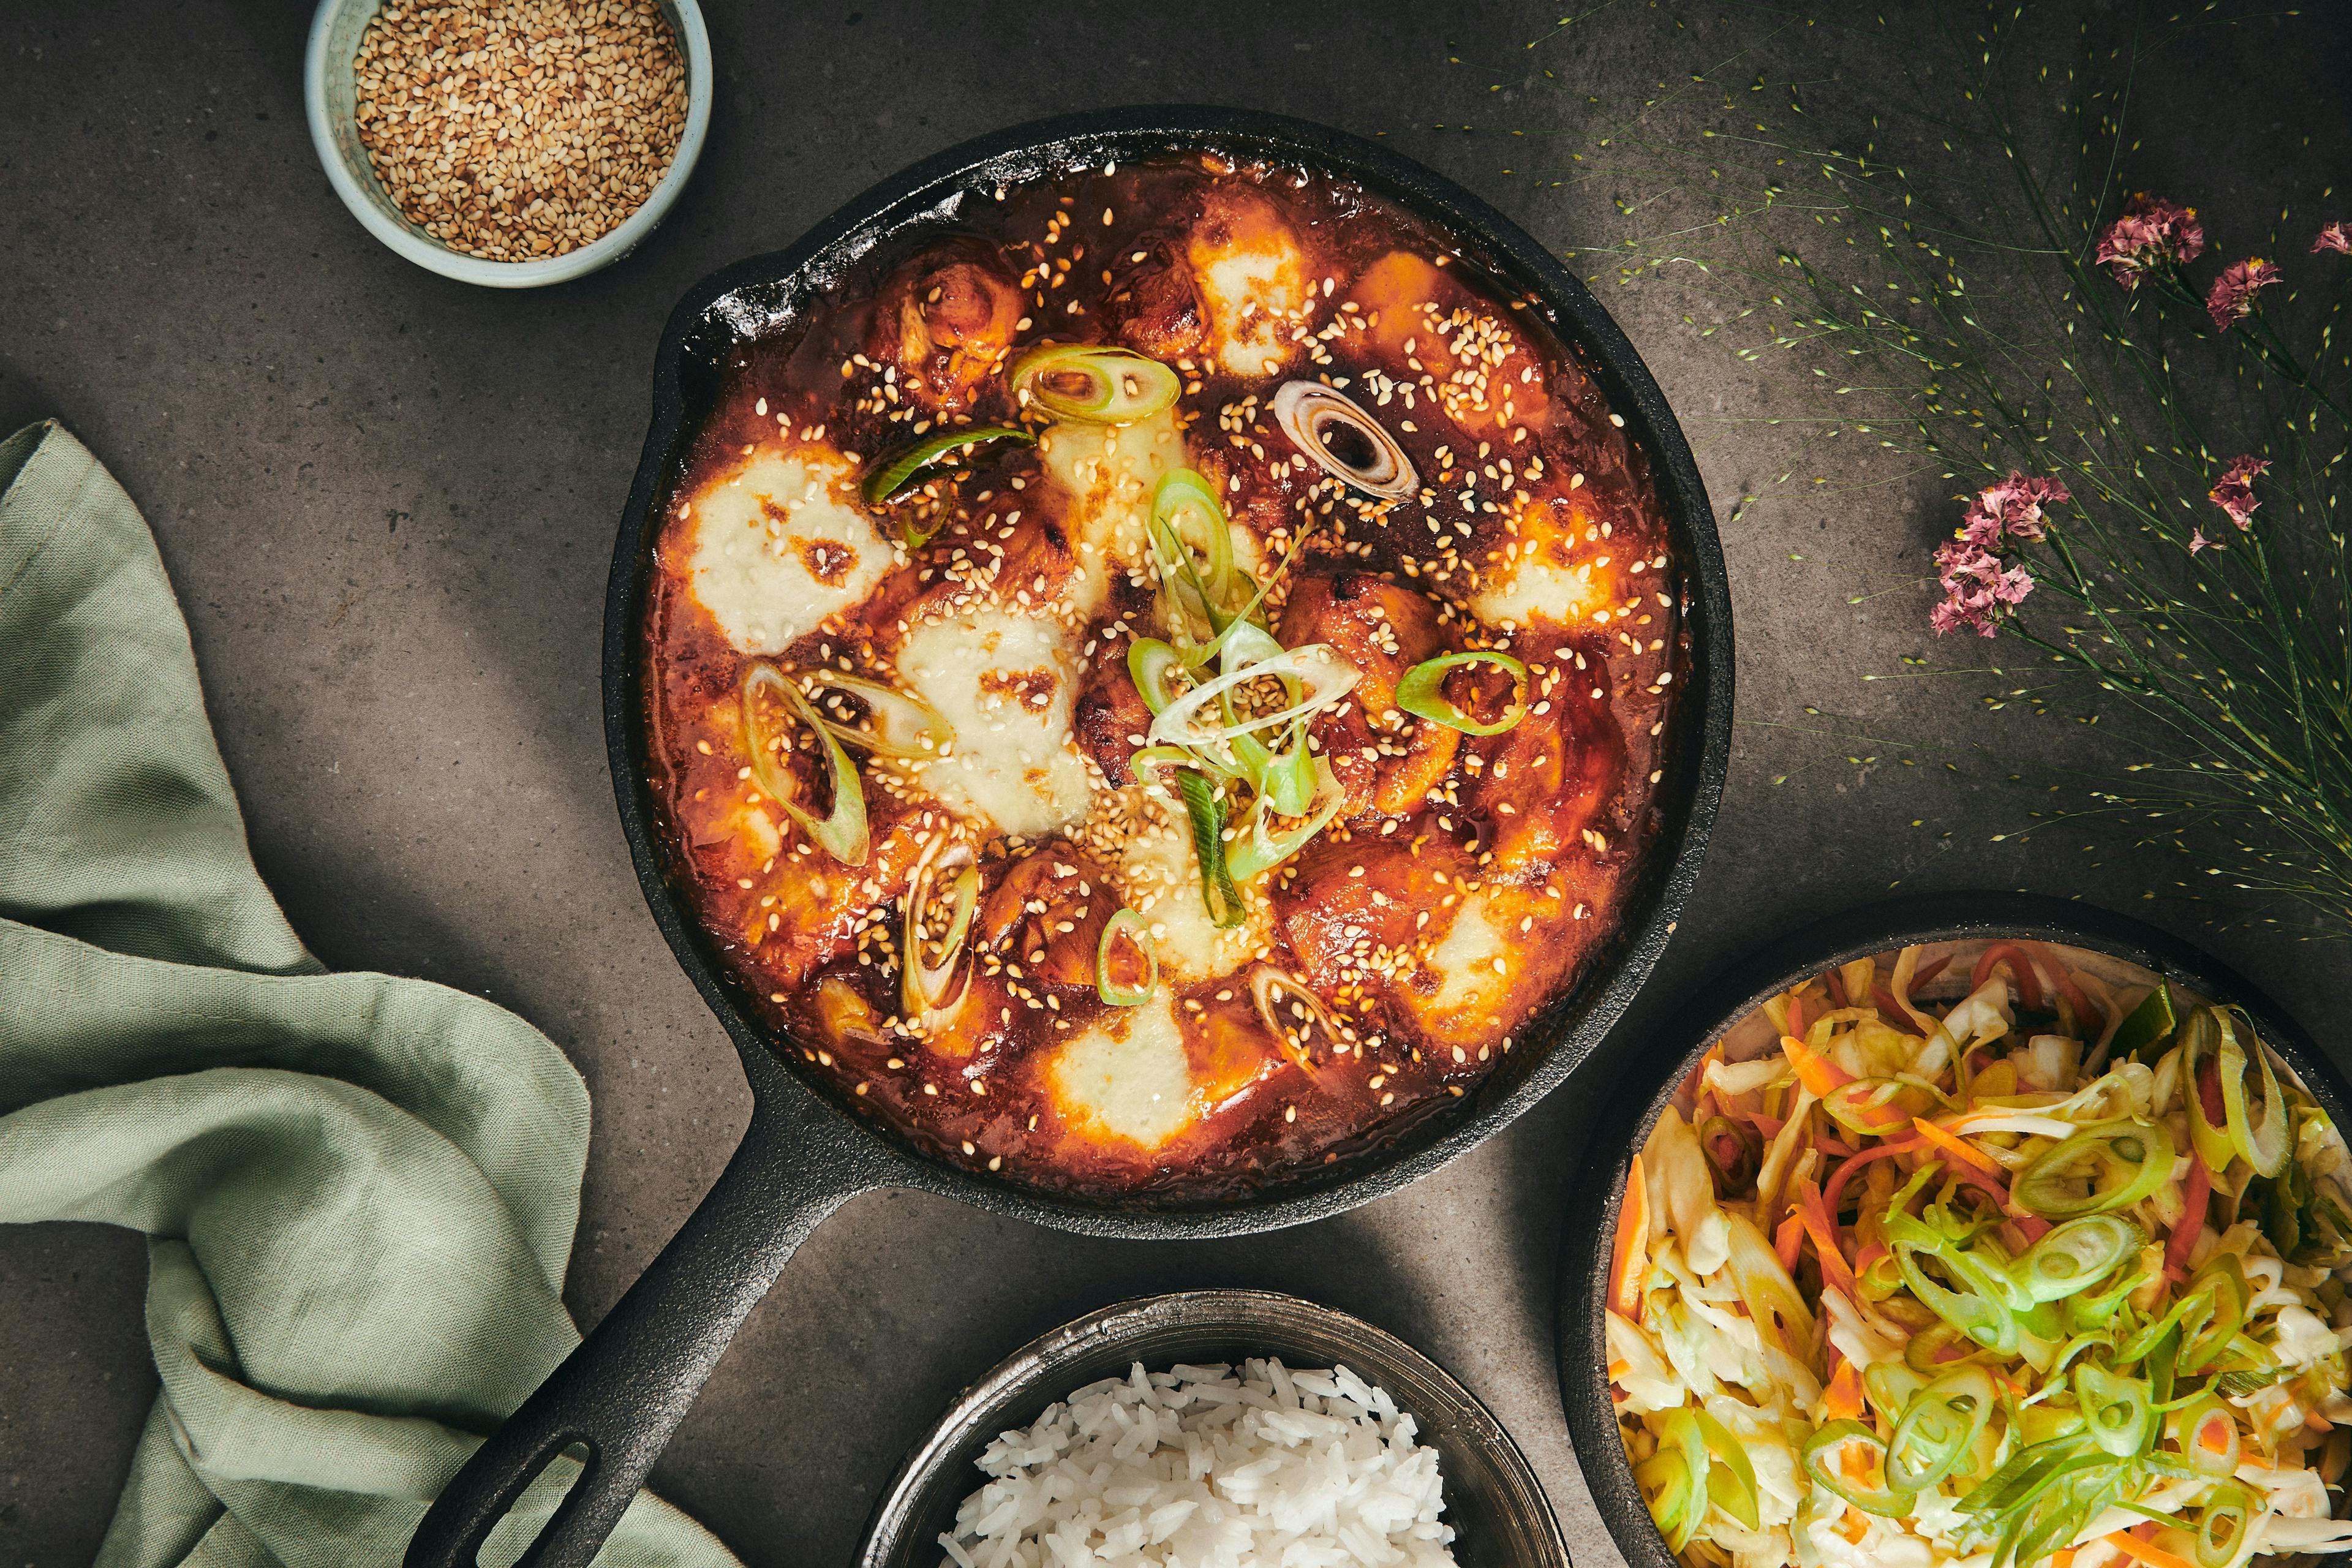 På billedet ses et herligt eksempel på en traditionel koreansk ret: buldak – ildkylling med gochujang, mozzarella, sesamfrø og koreansk coleslaw. I retten bruges gochujang som en base for en velsmagende ingefærsauce, der giver kyllingen sin stærke og rige smag.